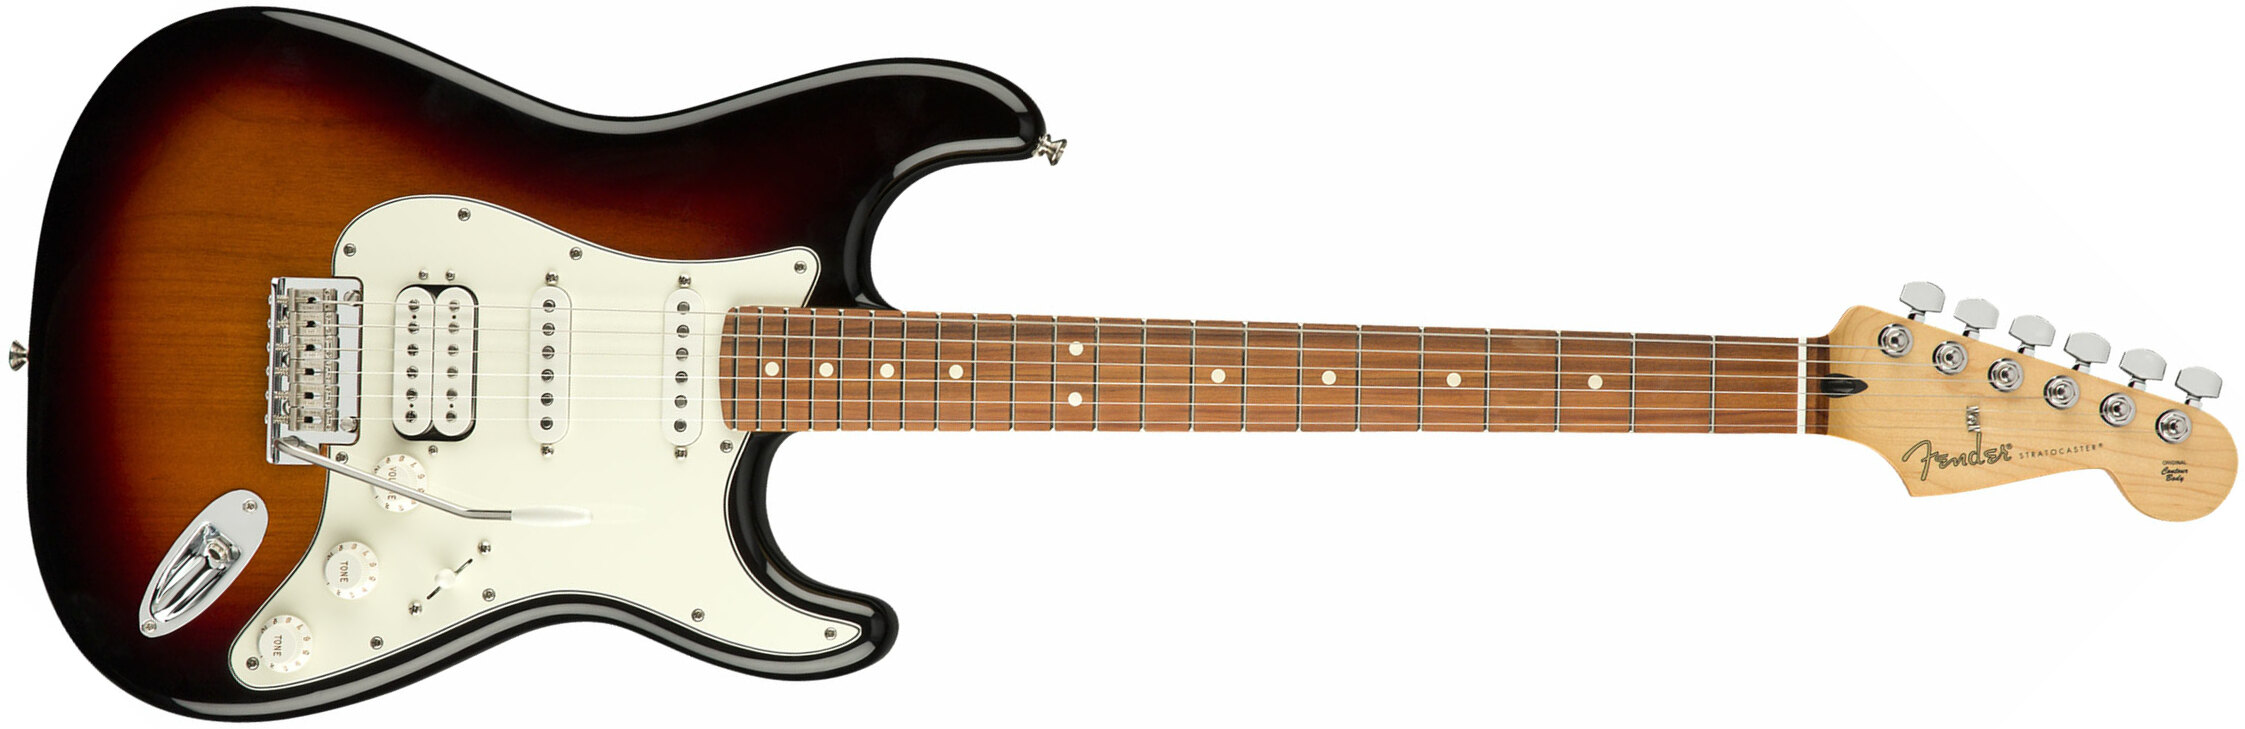 Fender Strat Player Mex Hss Pf - 3-color Sunburst - Guitare Électrique Forme Str - Main picture